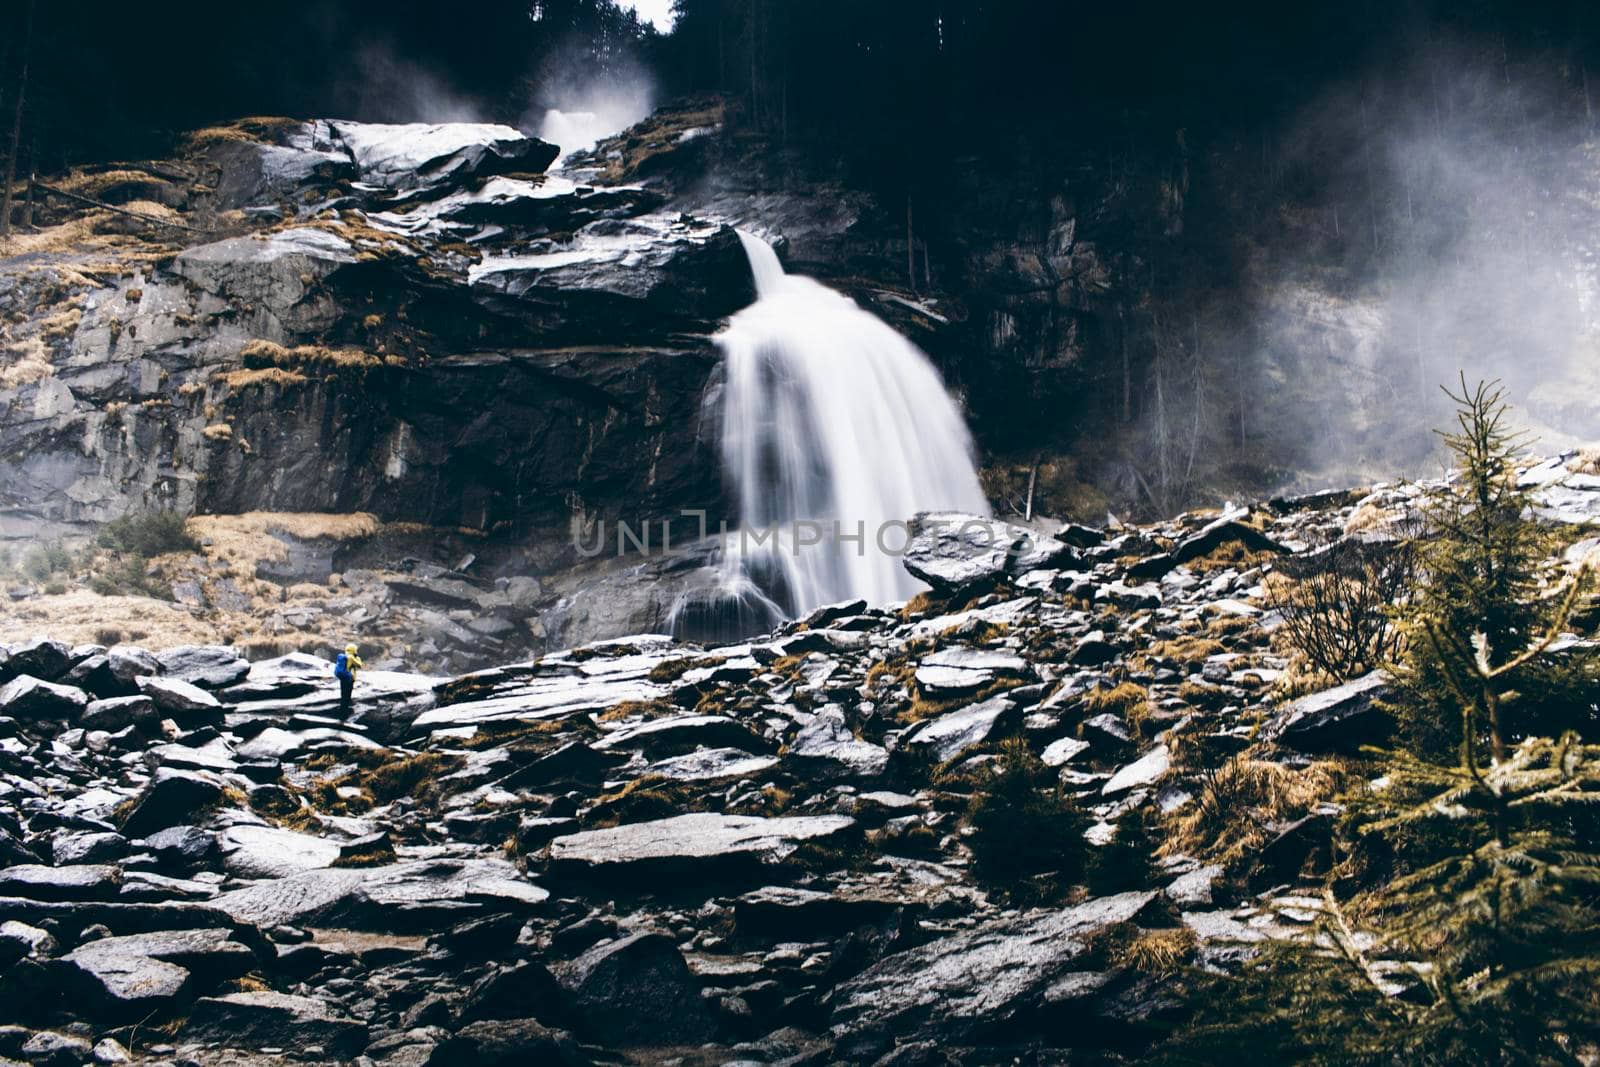 Landscape showing Krimmler waterfall in a rocky mountain in Austria